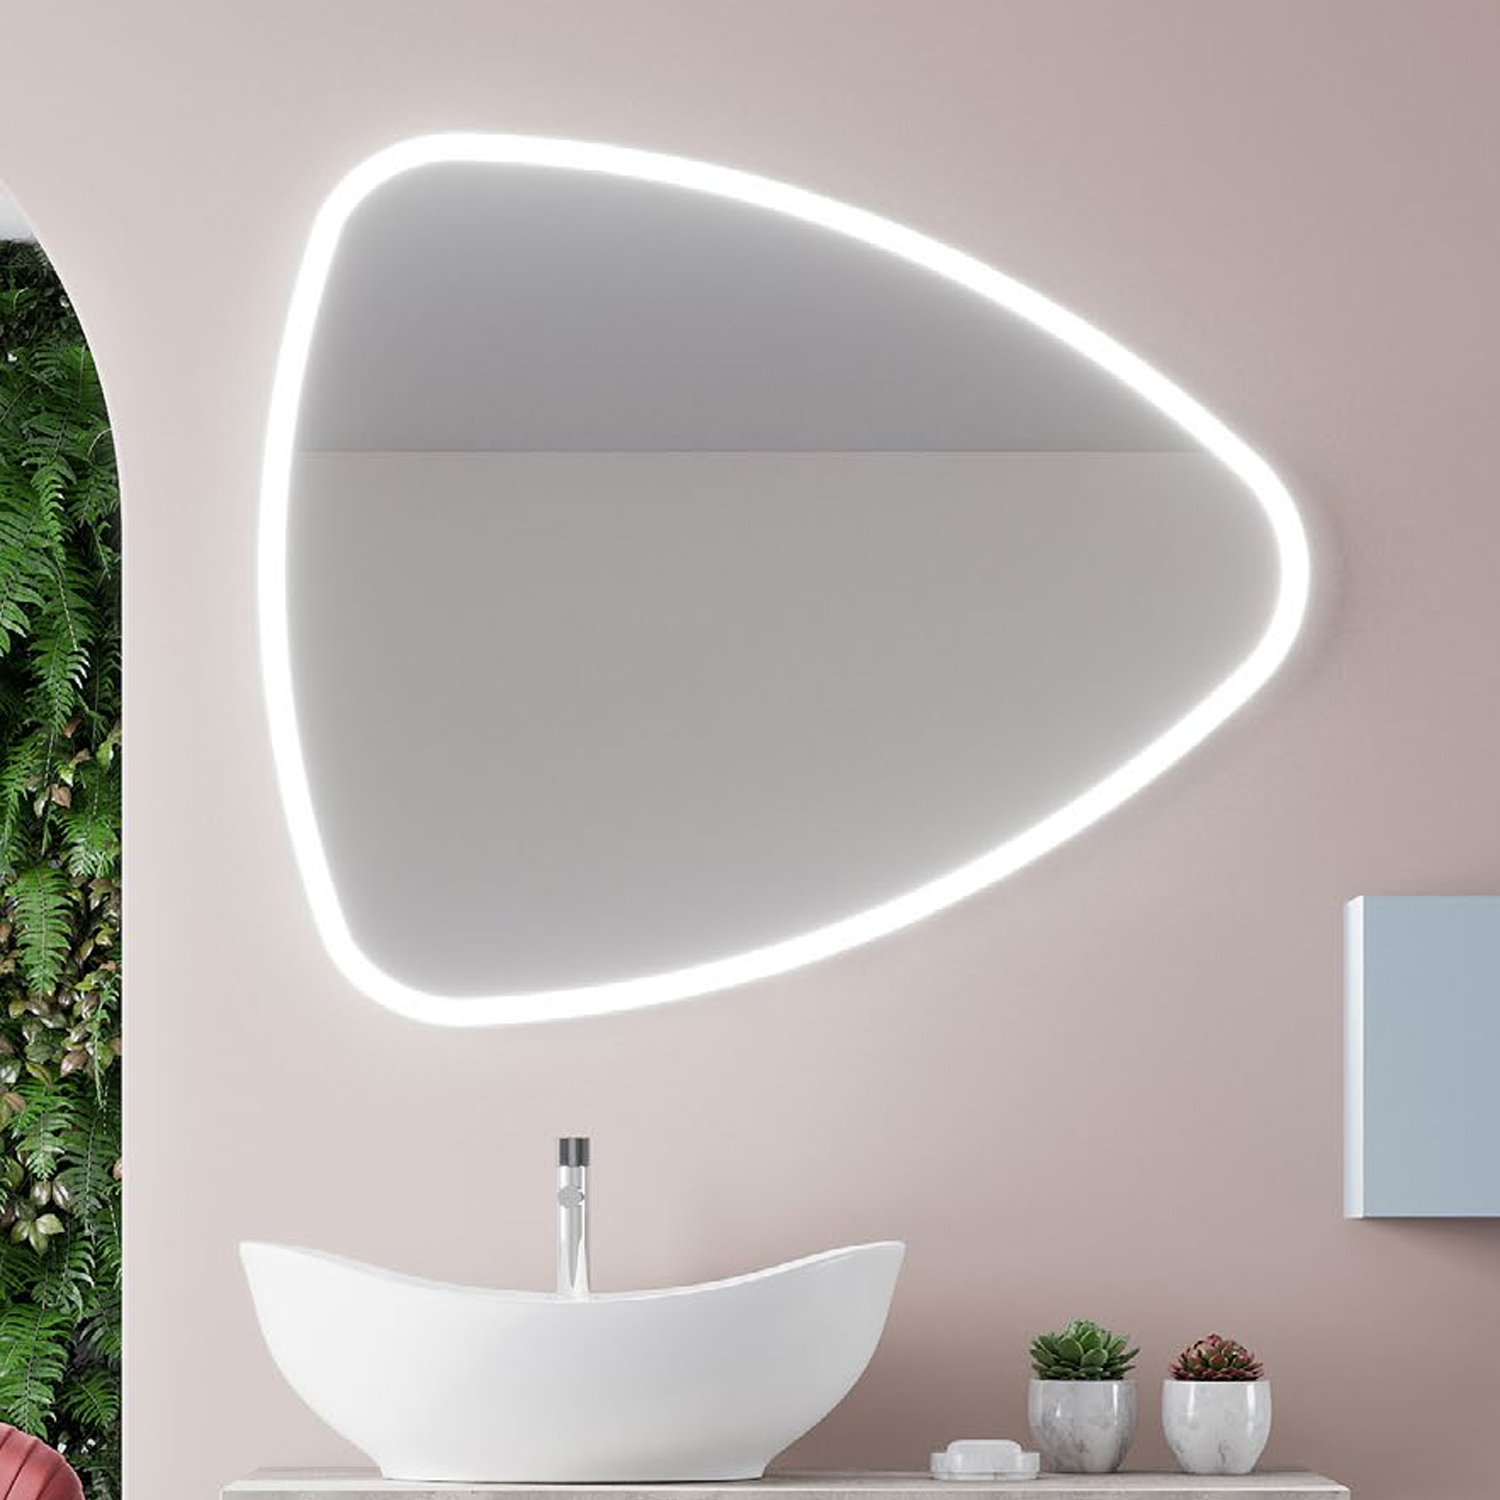 Specchio a goccia reversibile con luce led integrata cm 100x85